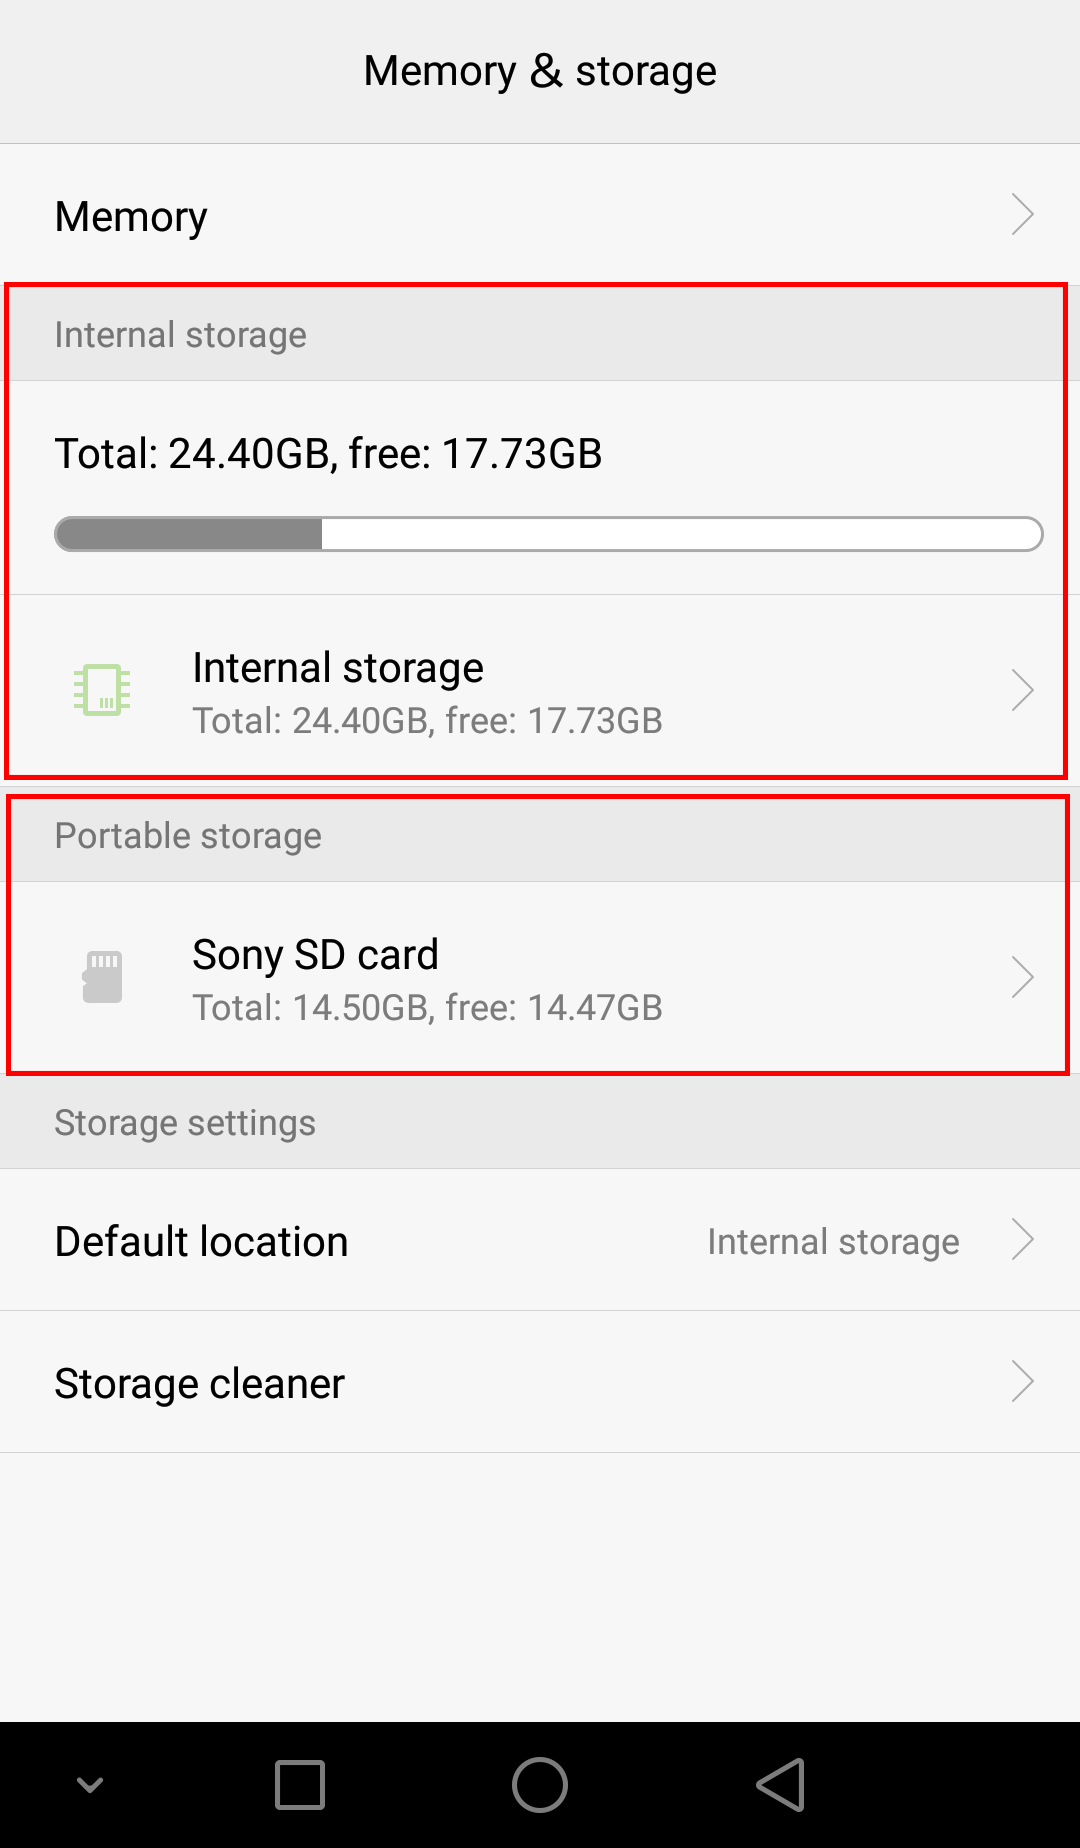 andare a vedere la situazione dello storage in uno smartphone